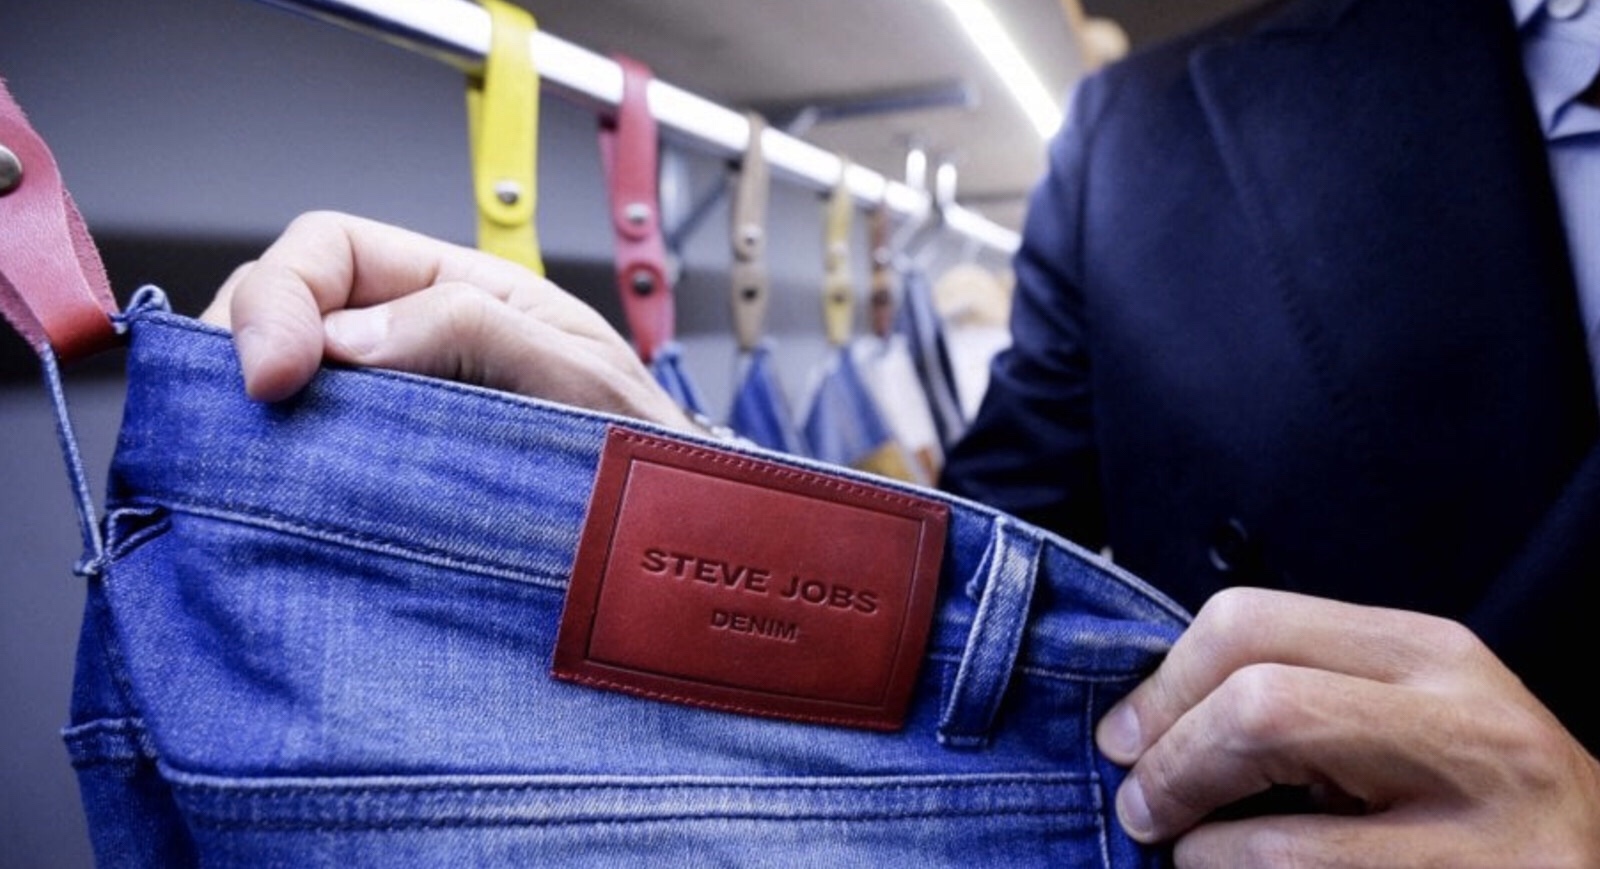 An Italian clothing company called ‘Steve Jobs’ wins legal battle against Apple